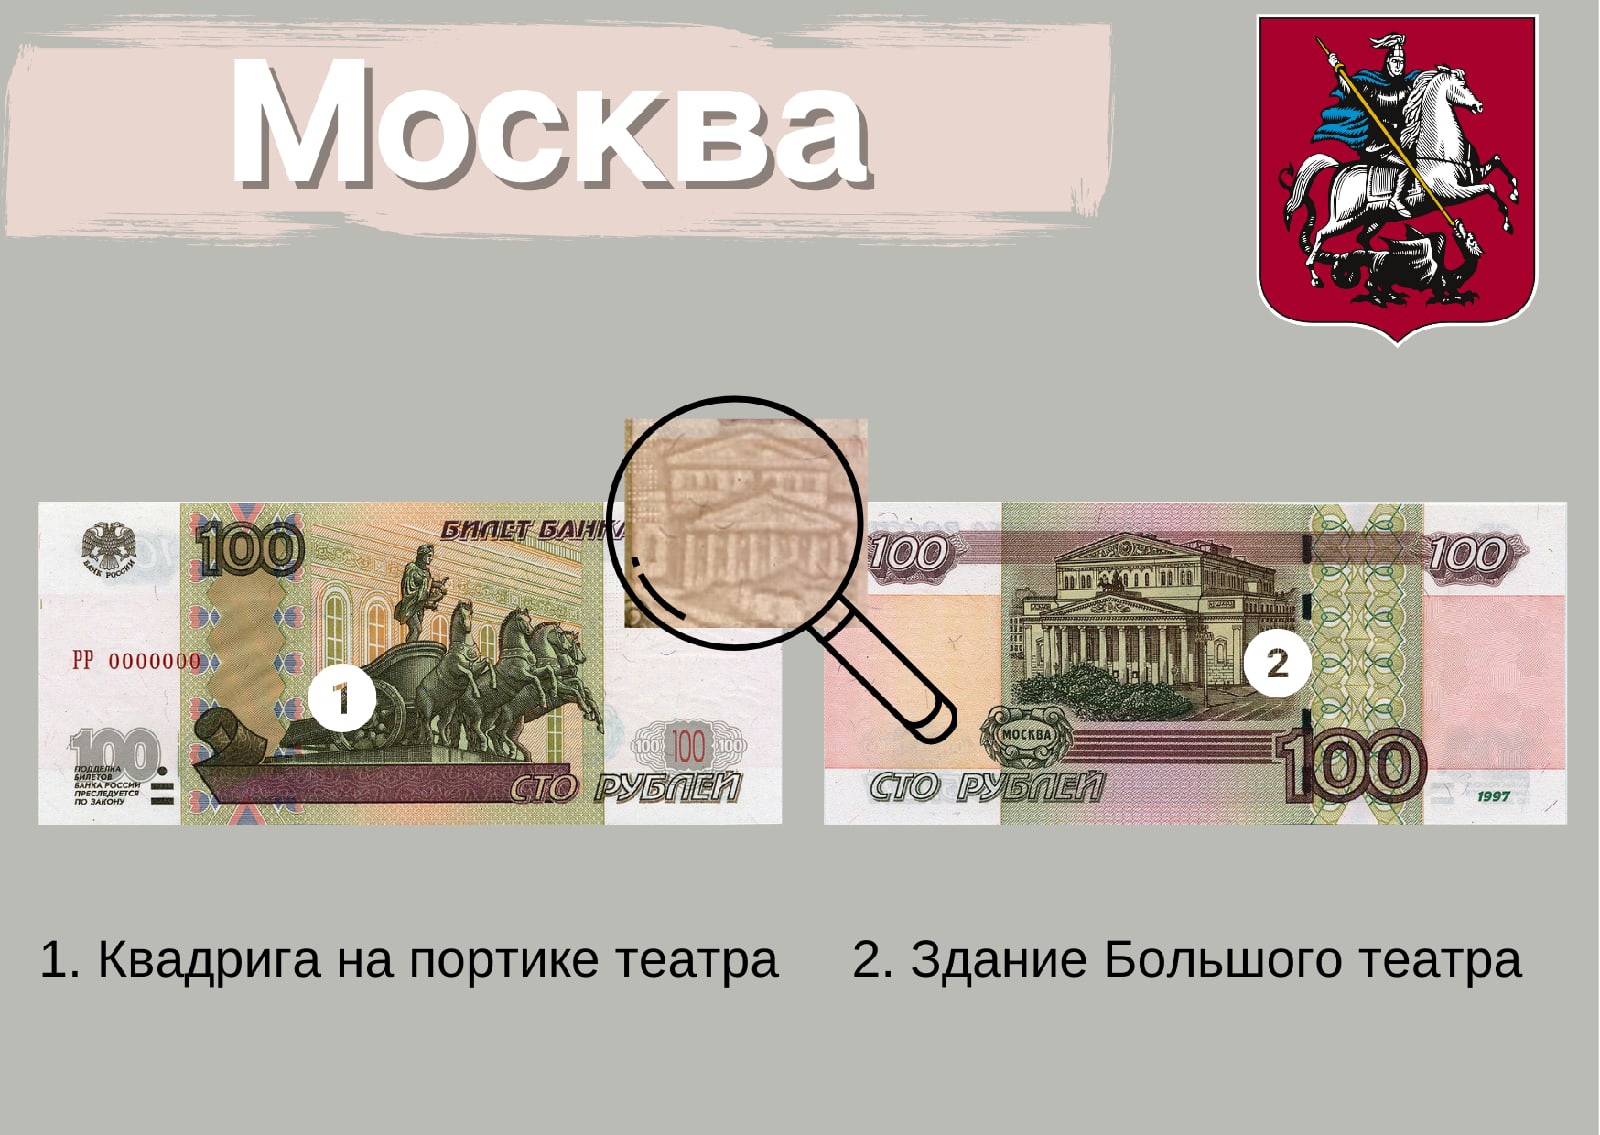 Достопримечательности на банкнотах. География денег России. Турция русский деньги